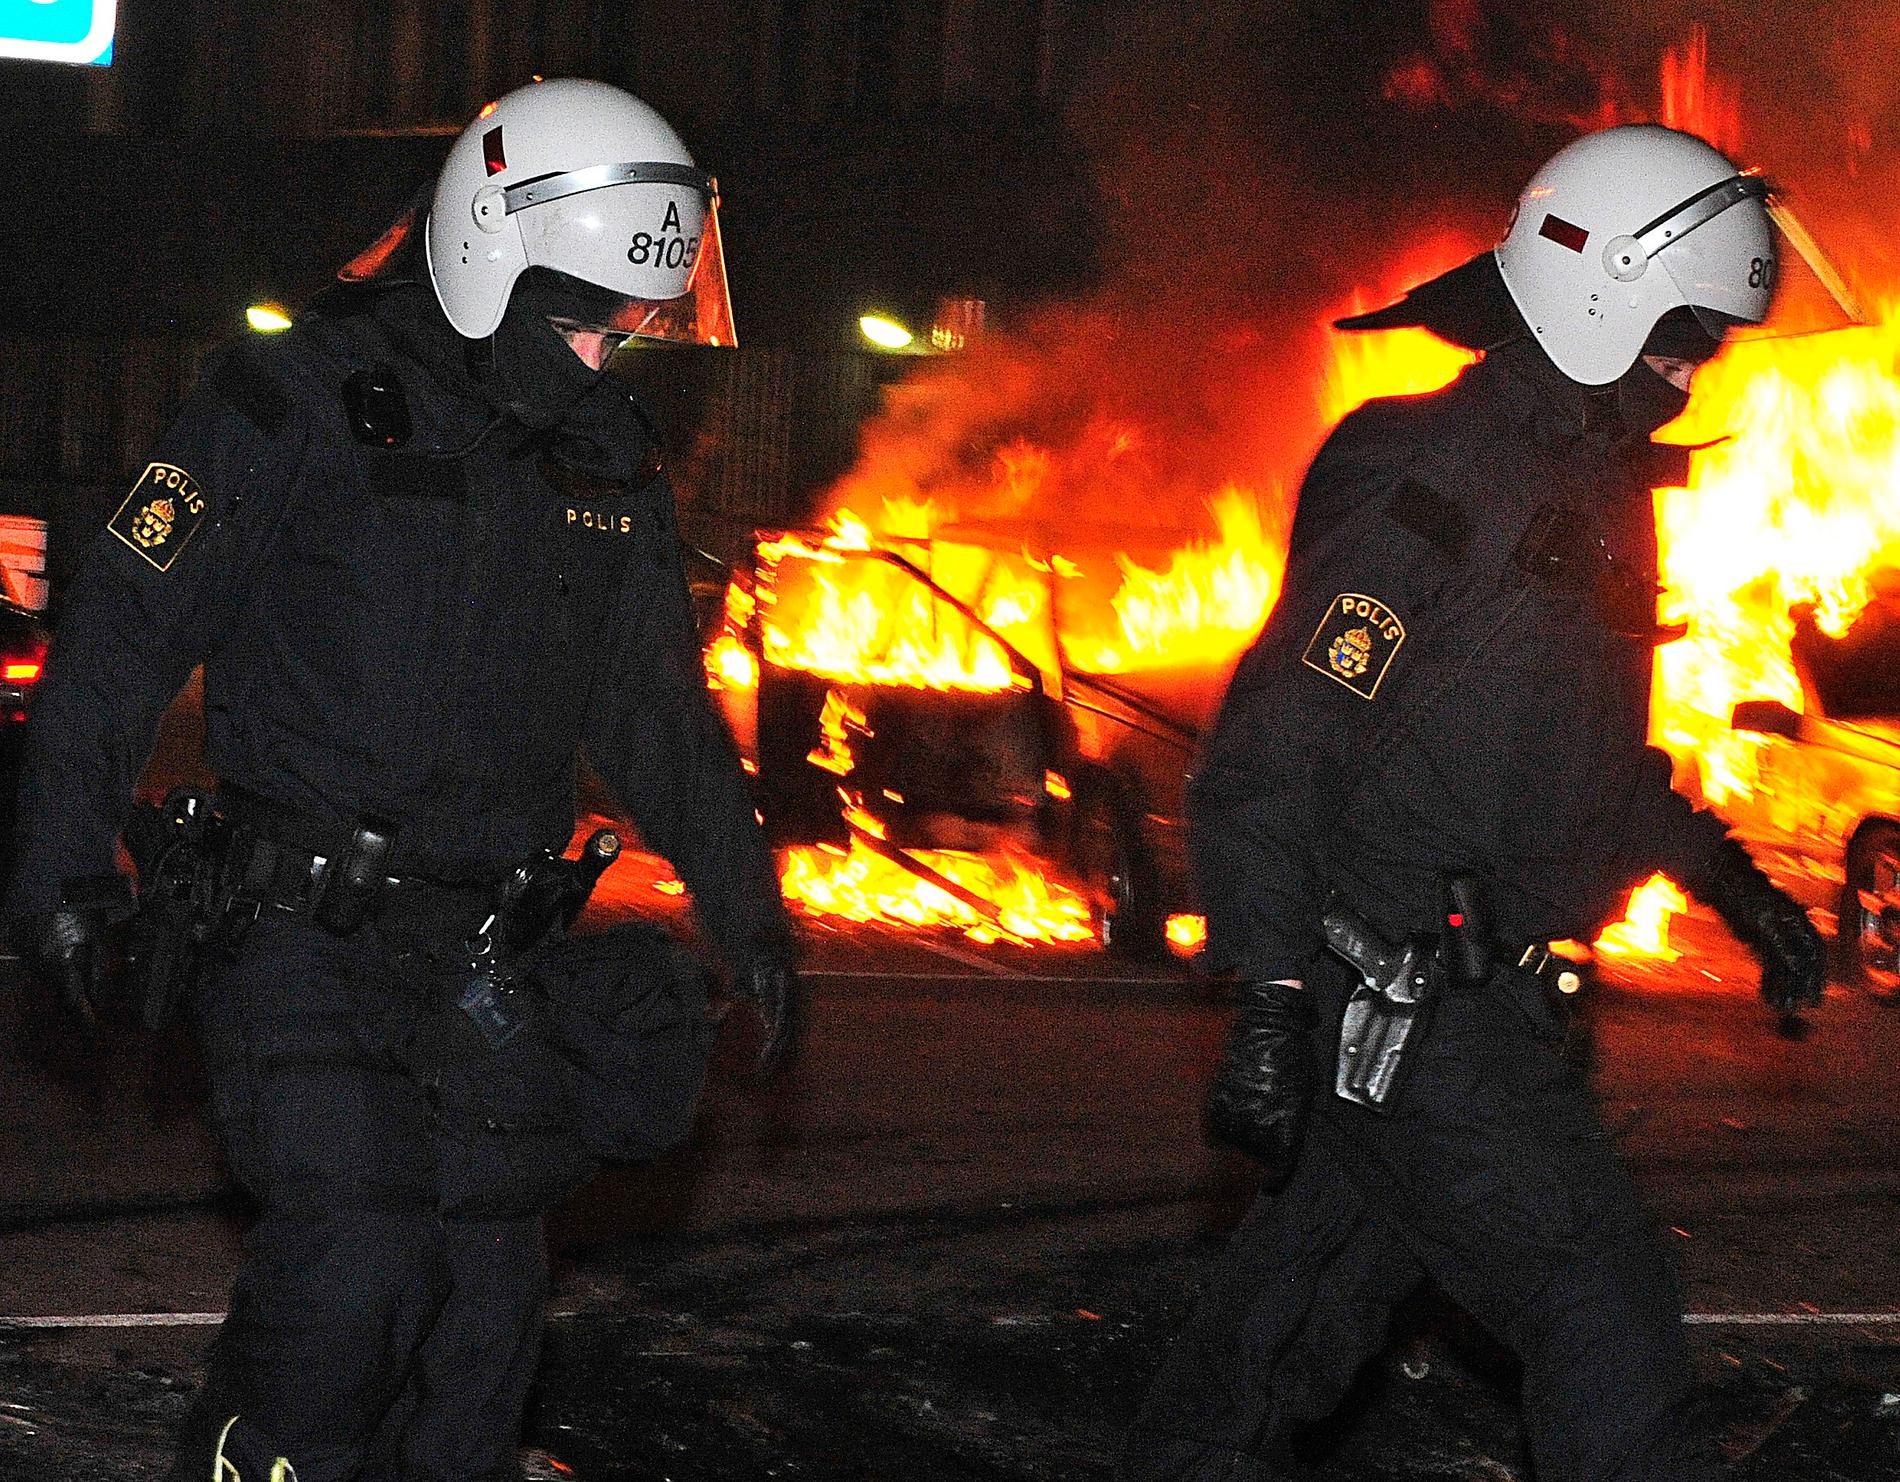 "DET ÄR EN REVOLT" Flera nätter i rad har bilar brunnit i Husby. Idag ger skrivgruppen Pantrarna för upprustning av förirten sitt stöd till de unga i Stockholmsförorten – och uppmanar till krafttag mot polisens övervåld.